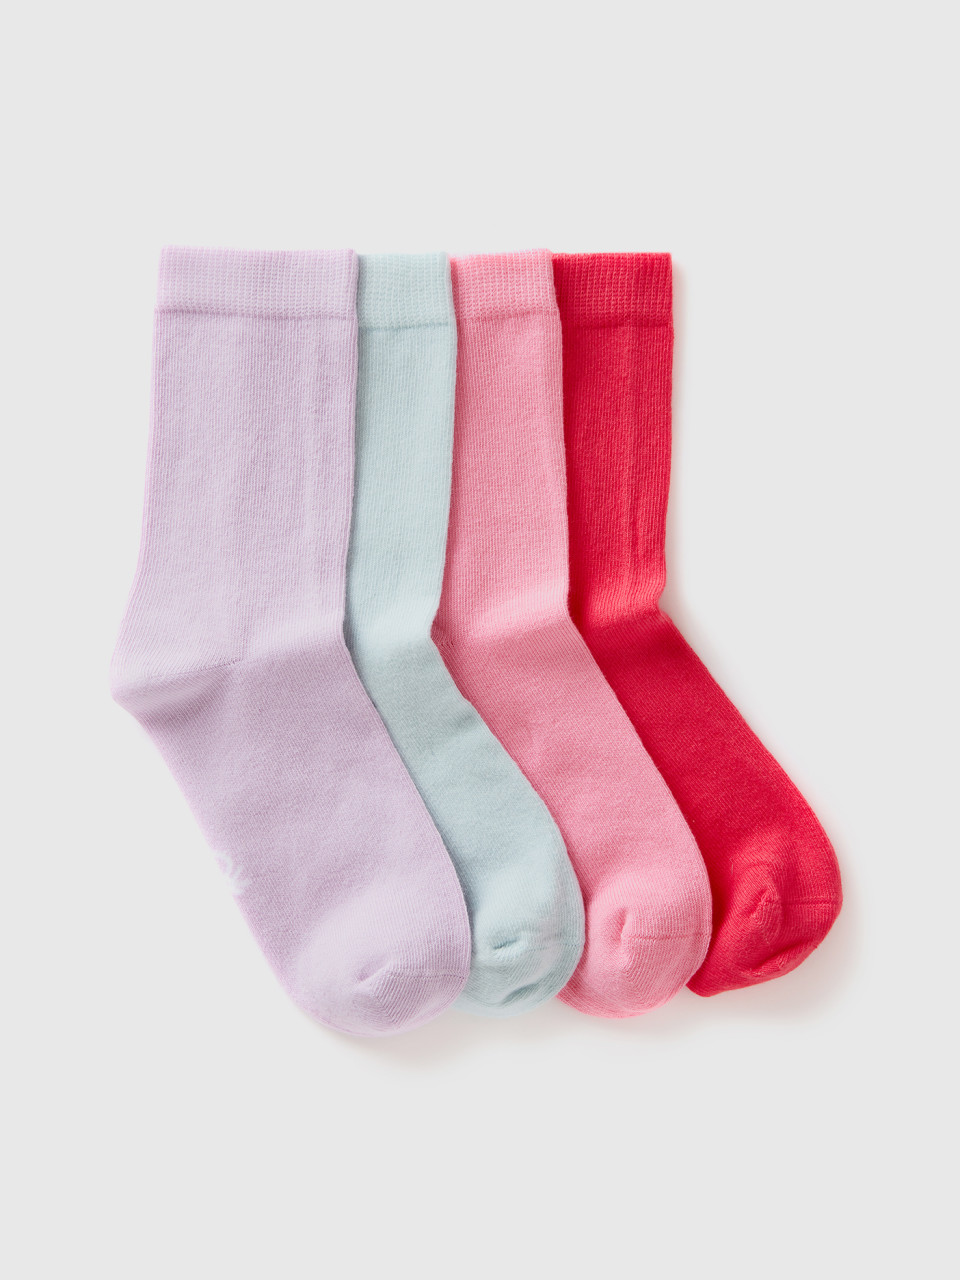 Benetton, Short Sock Set, Multi-color, Kids